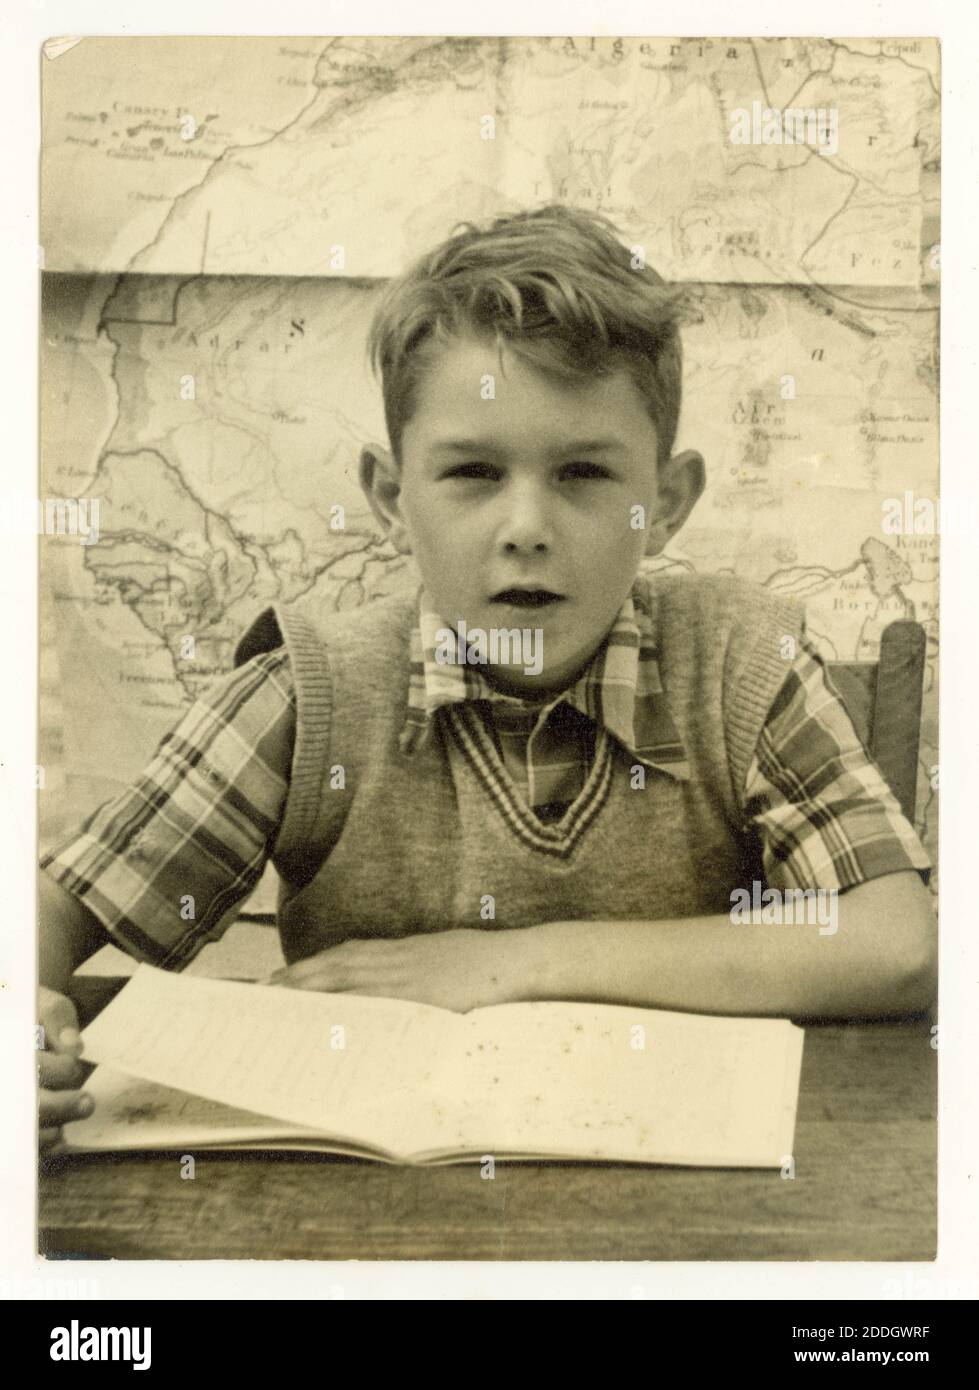 Originalfoto aus den 50er Jahren von einem Schuljungen, der ein kariertes Hemd und ein Trägerhemd trägt, sitzt am Schreibtisch und liest ein Buch, eine Karte an der Wand hinter ihm, Großbritannien Stockfoto